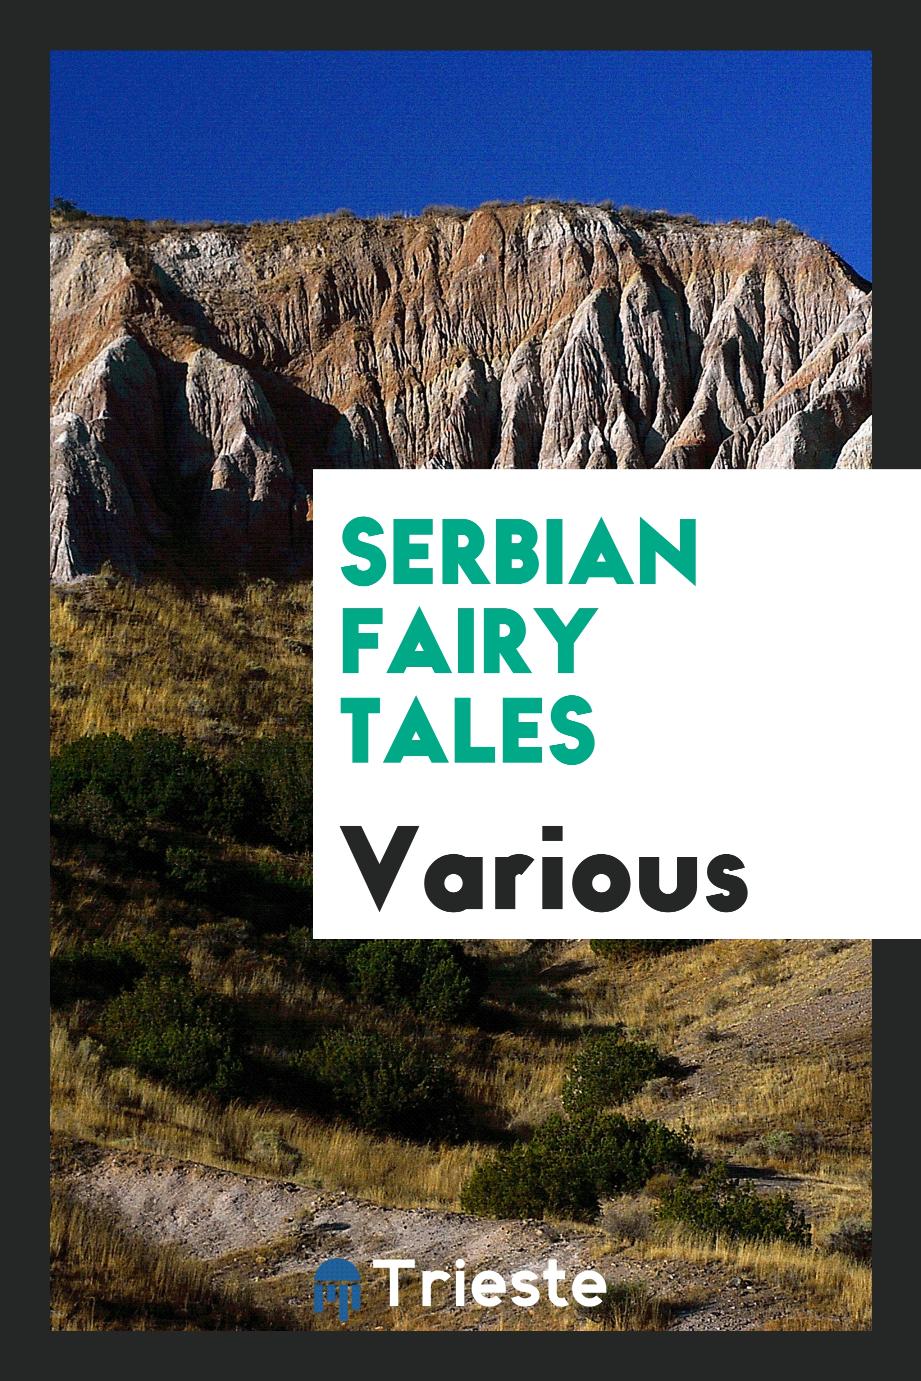 Serbian fairy tales